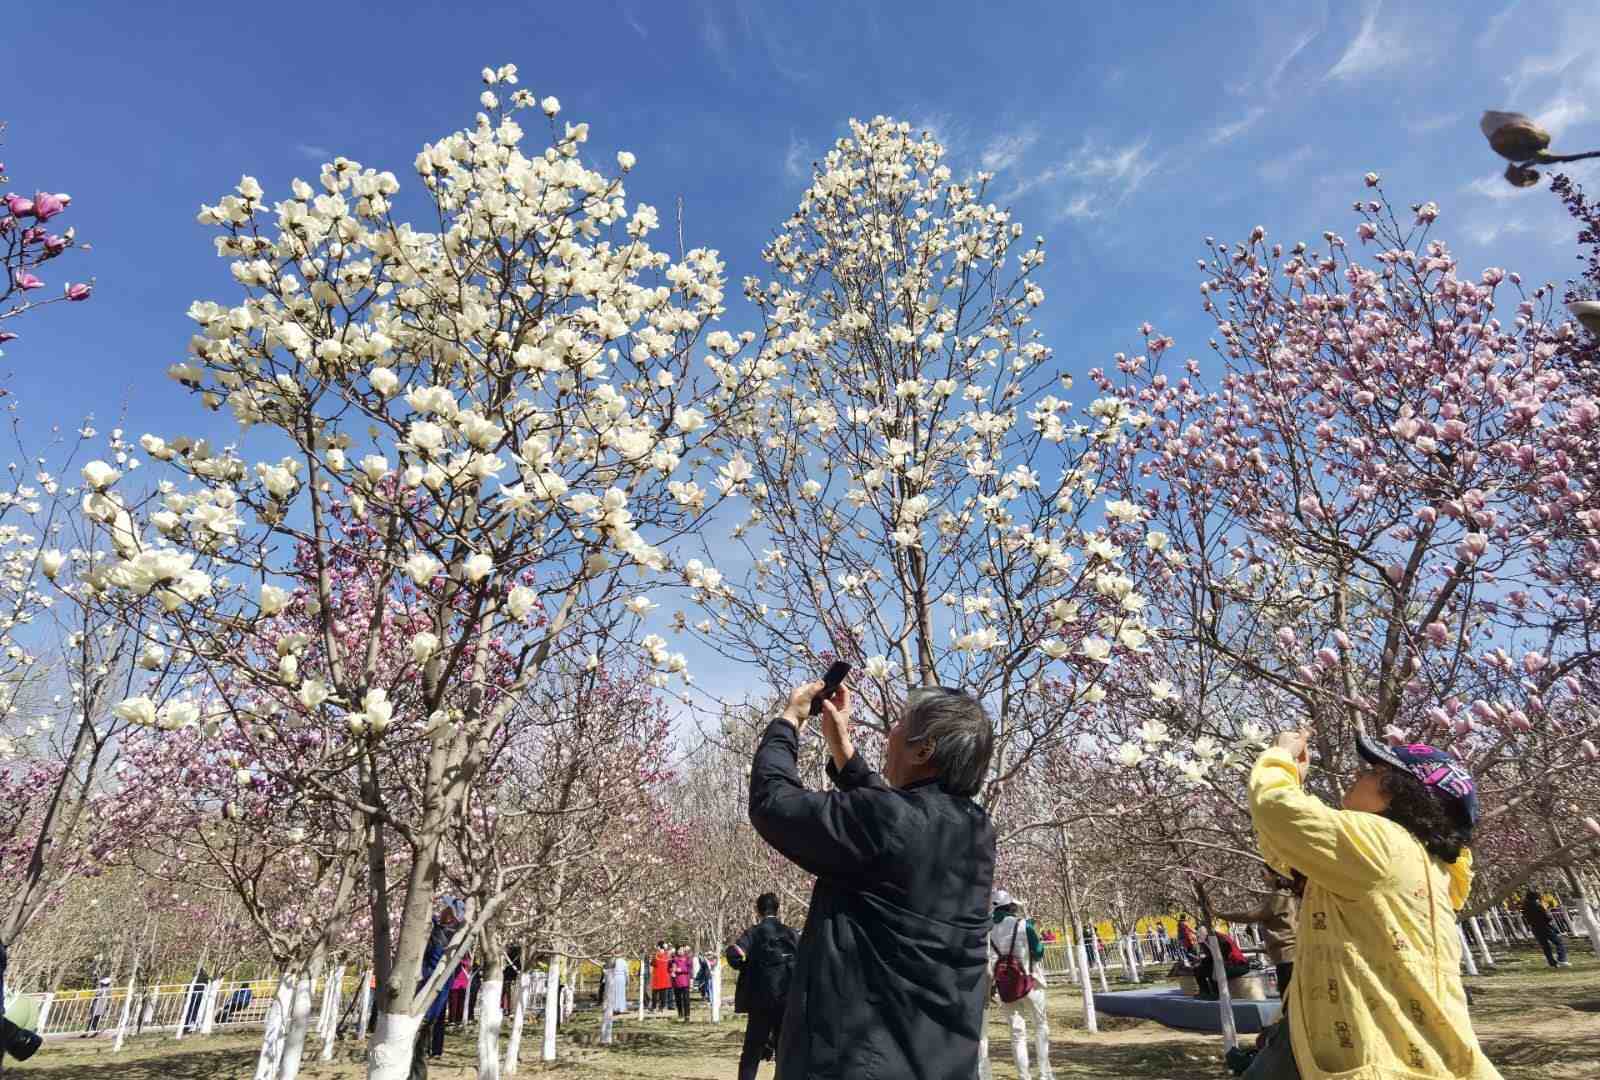 等你来！“北京规模最大玉兰观赏园”的花开啦